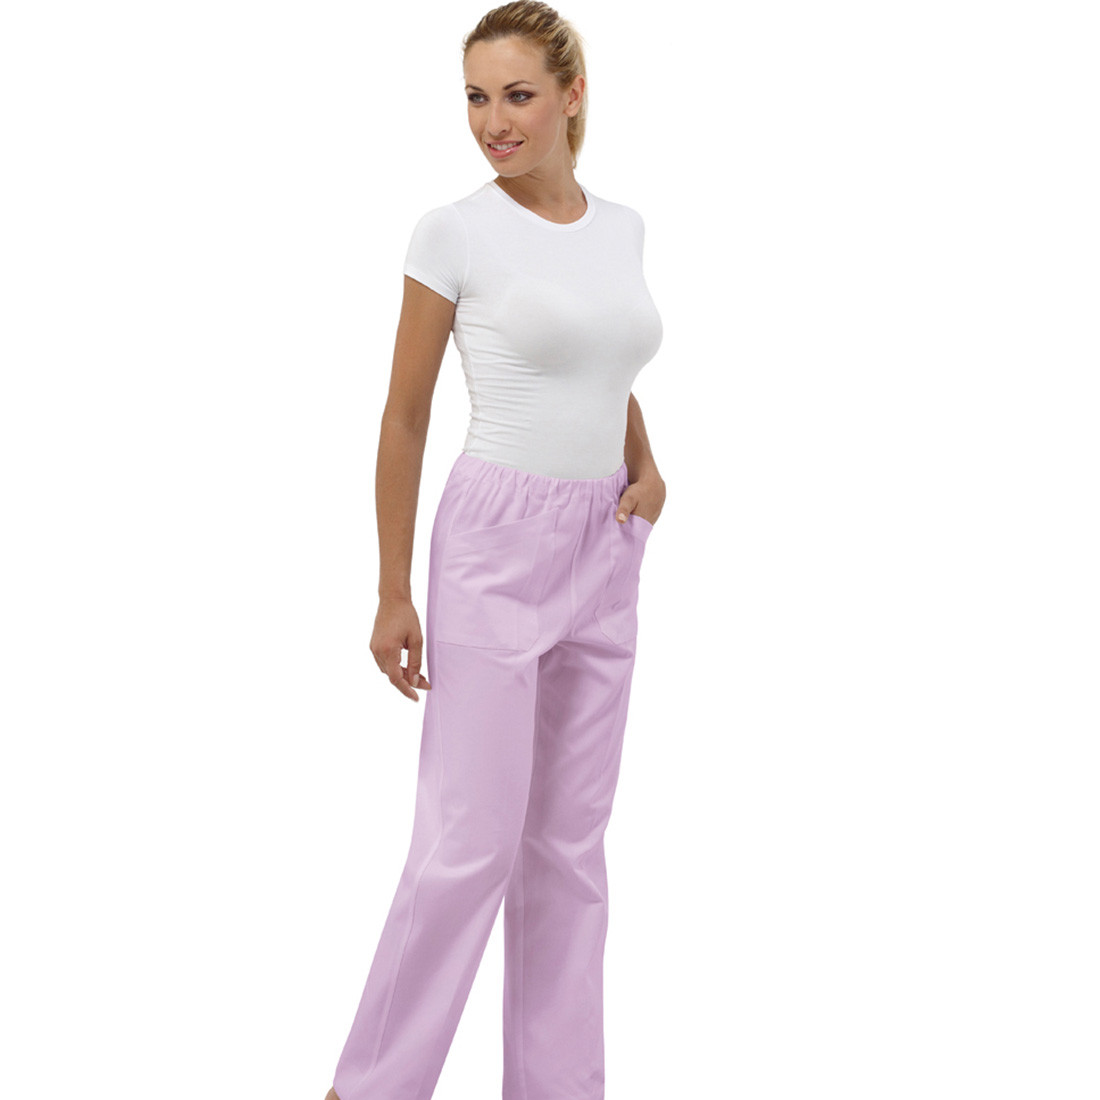 Pantaloni medicali unisex STAR II - Imbracaminte de protectie